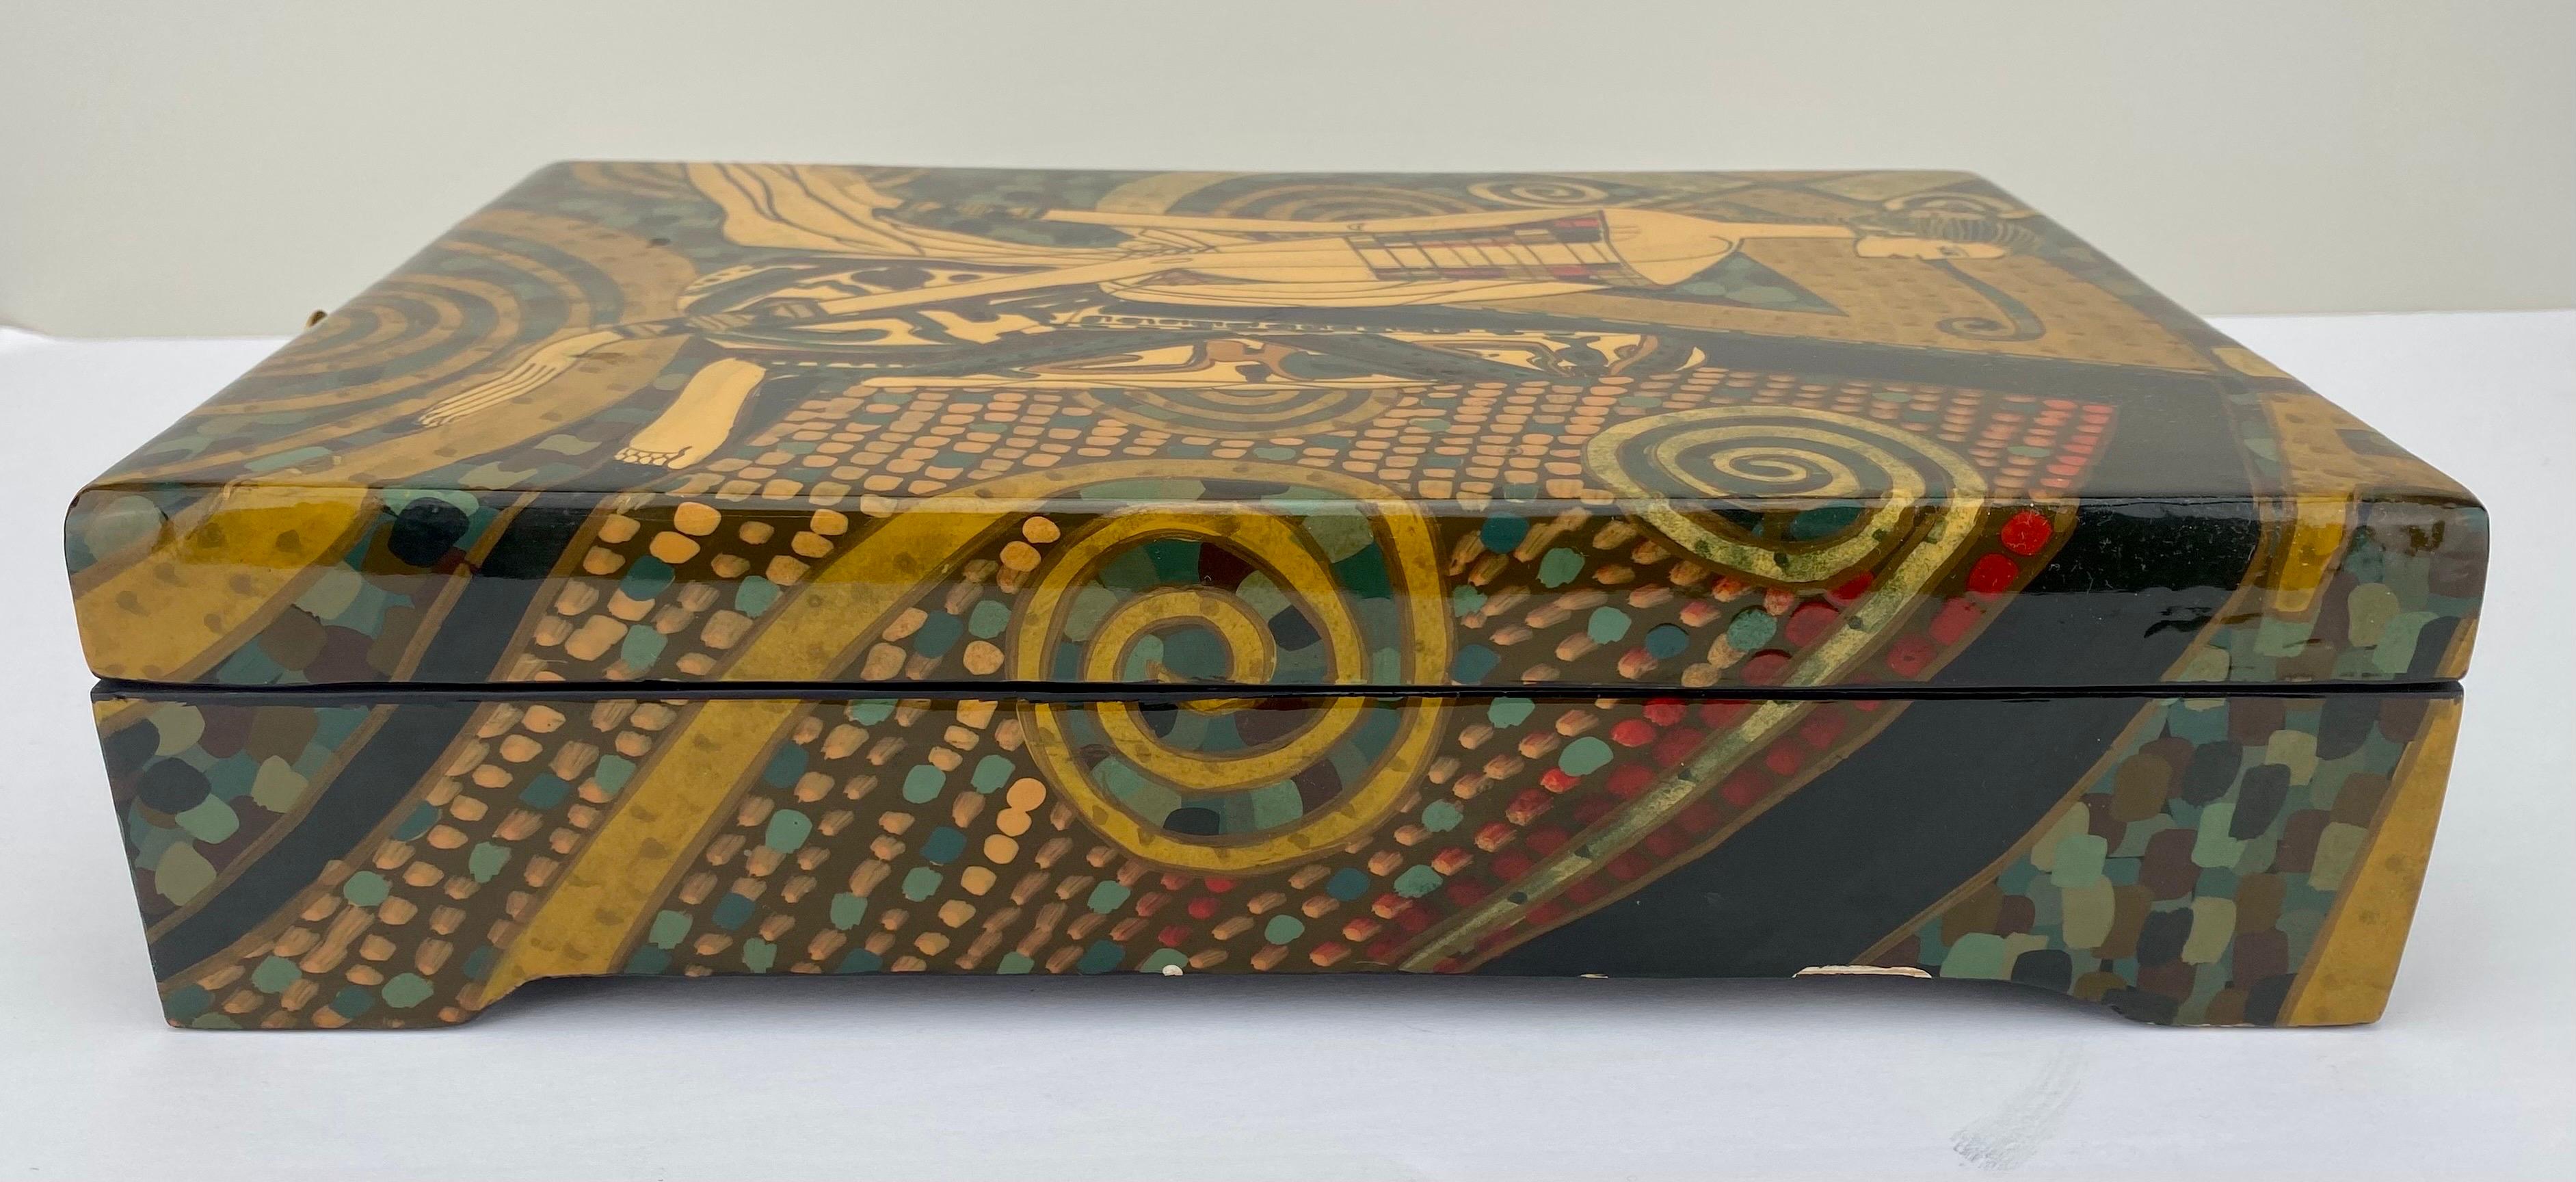 Art Deco Revival Style Figurative Lacquer Decorative Box  For Sale 2